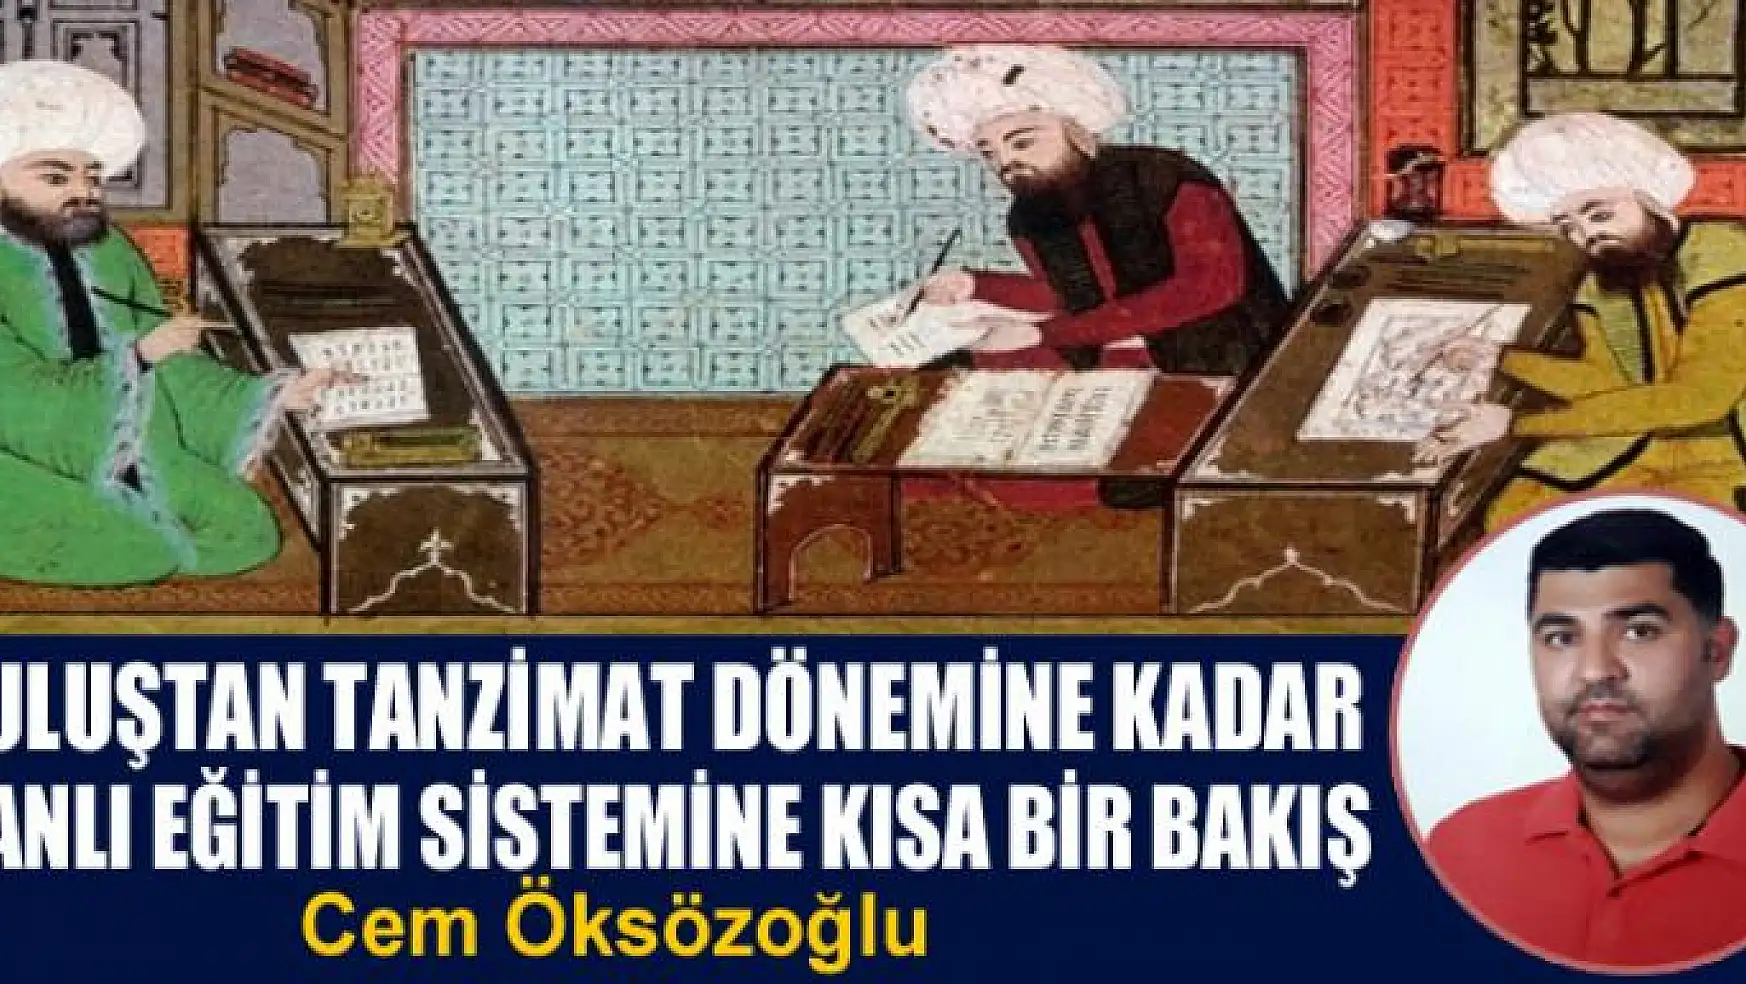 Kuruluştan Tanzimat dönemine kadar Osmanlı eğitim sistemine kısa bir bakış